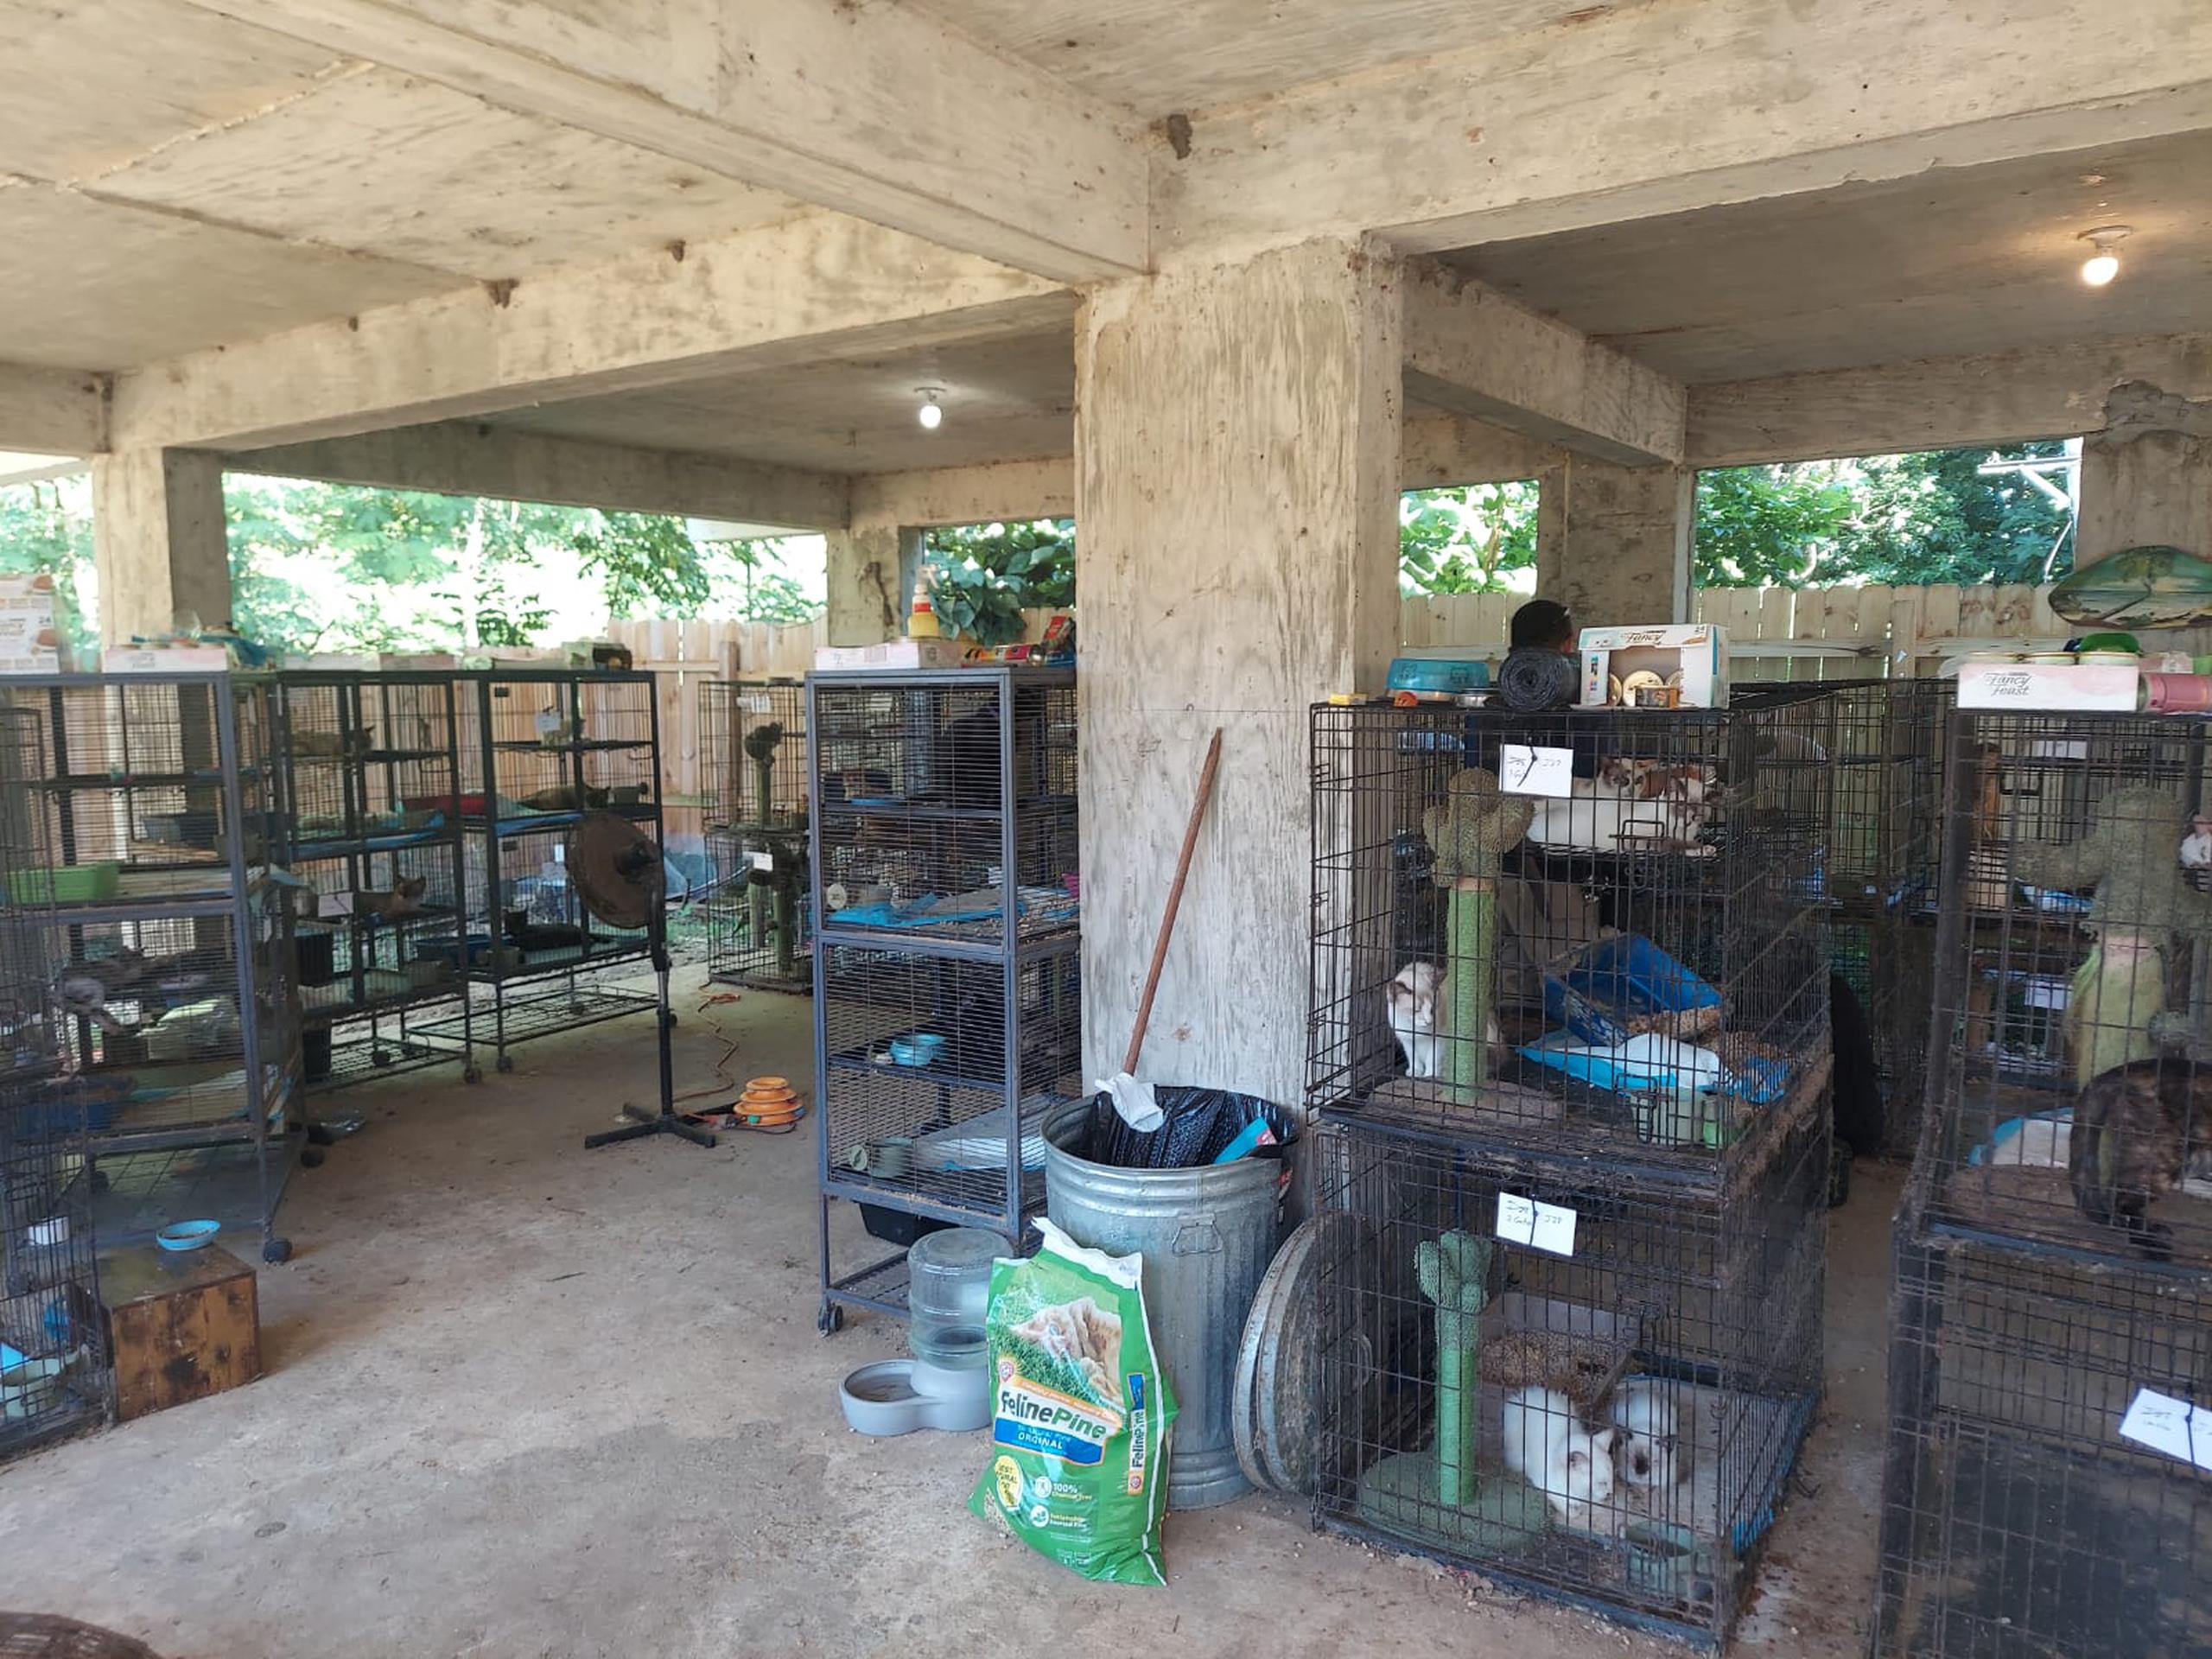 Un centenar de gatos fueron rescatados durante un allanamiento en una residencia localizada en el kilómetro 2.0 de la carretera PR-401 del barrio Playa, en Añasco.